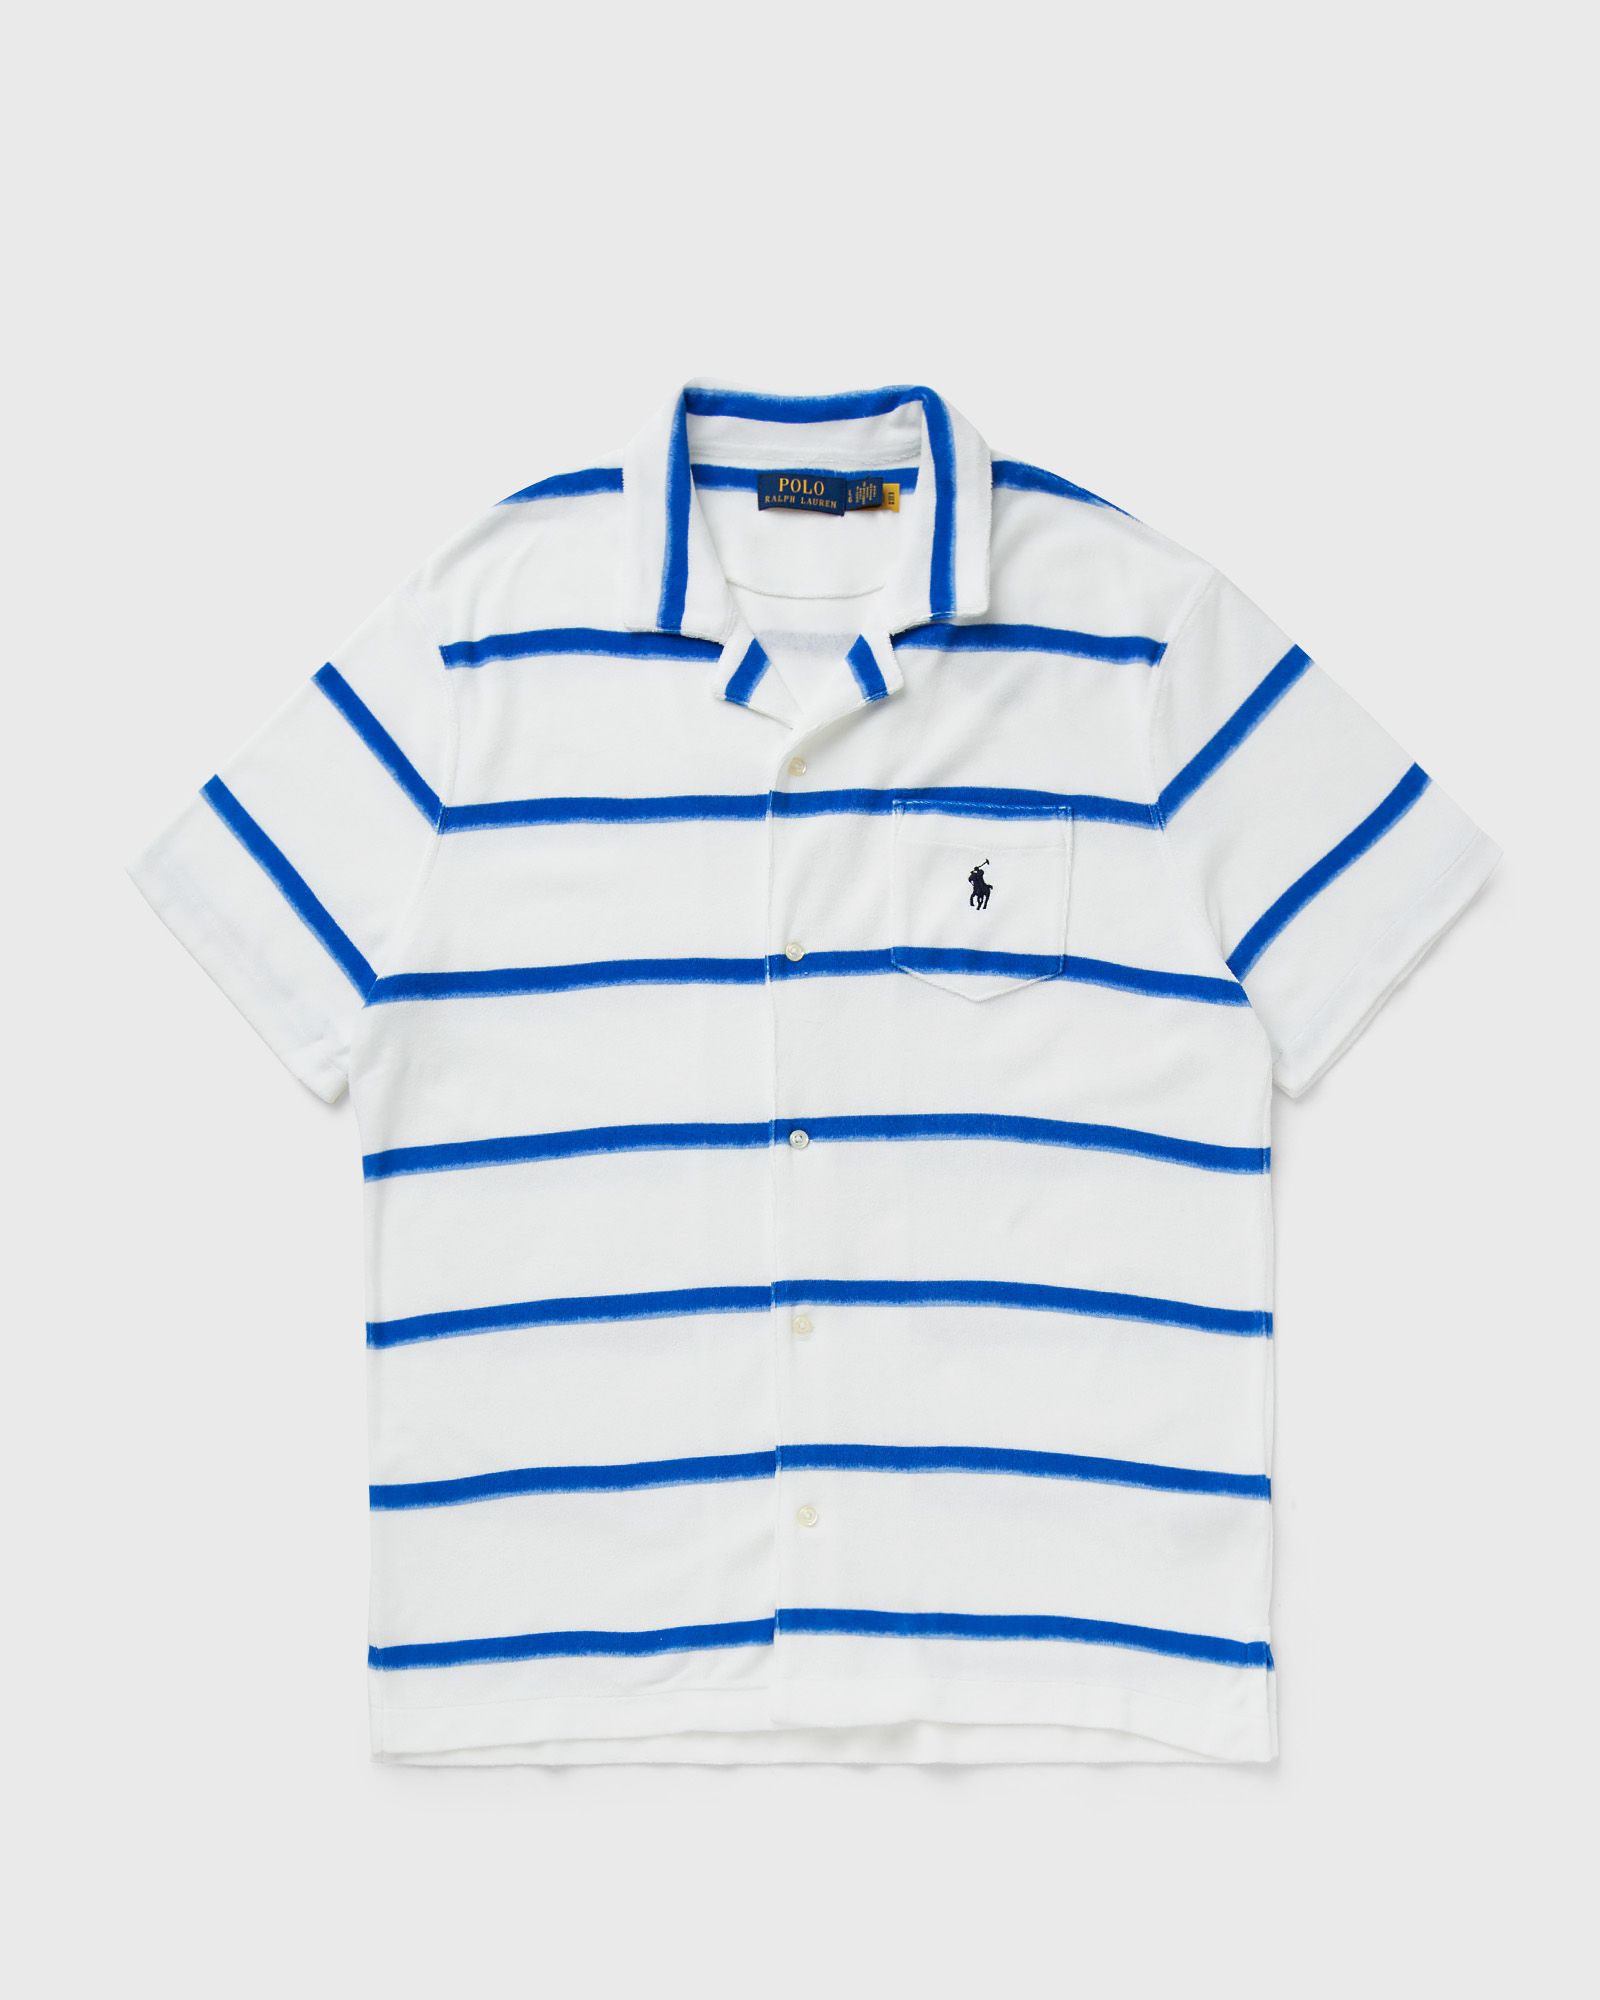 Polo Ralph Lauren - short sleeve-sport shirt men shortsleeves blue in größe:xxl